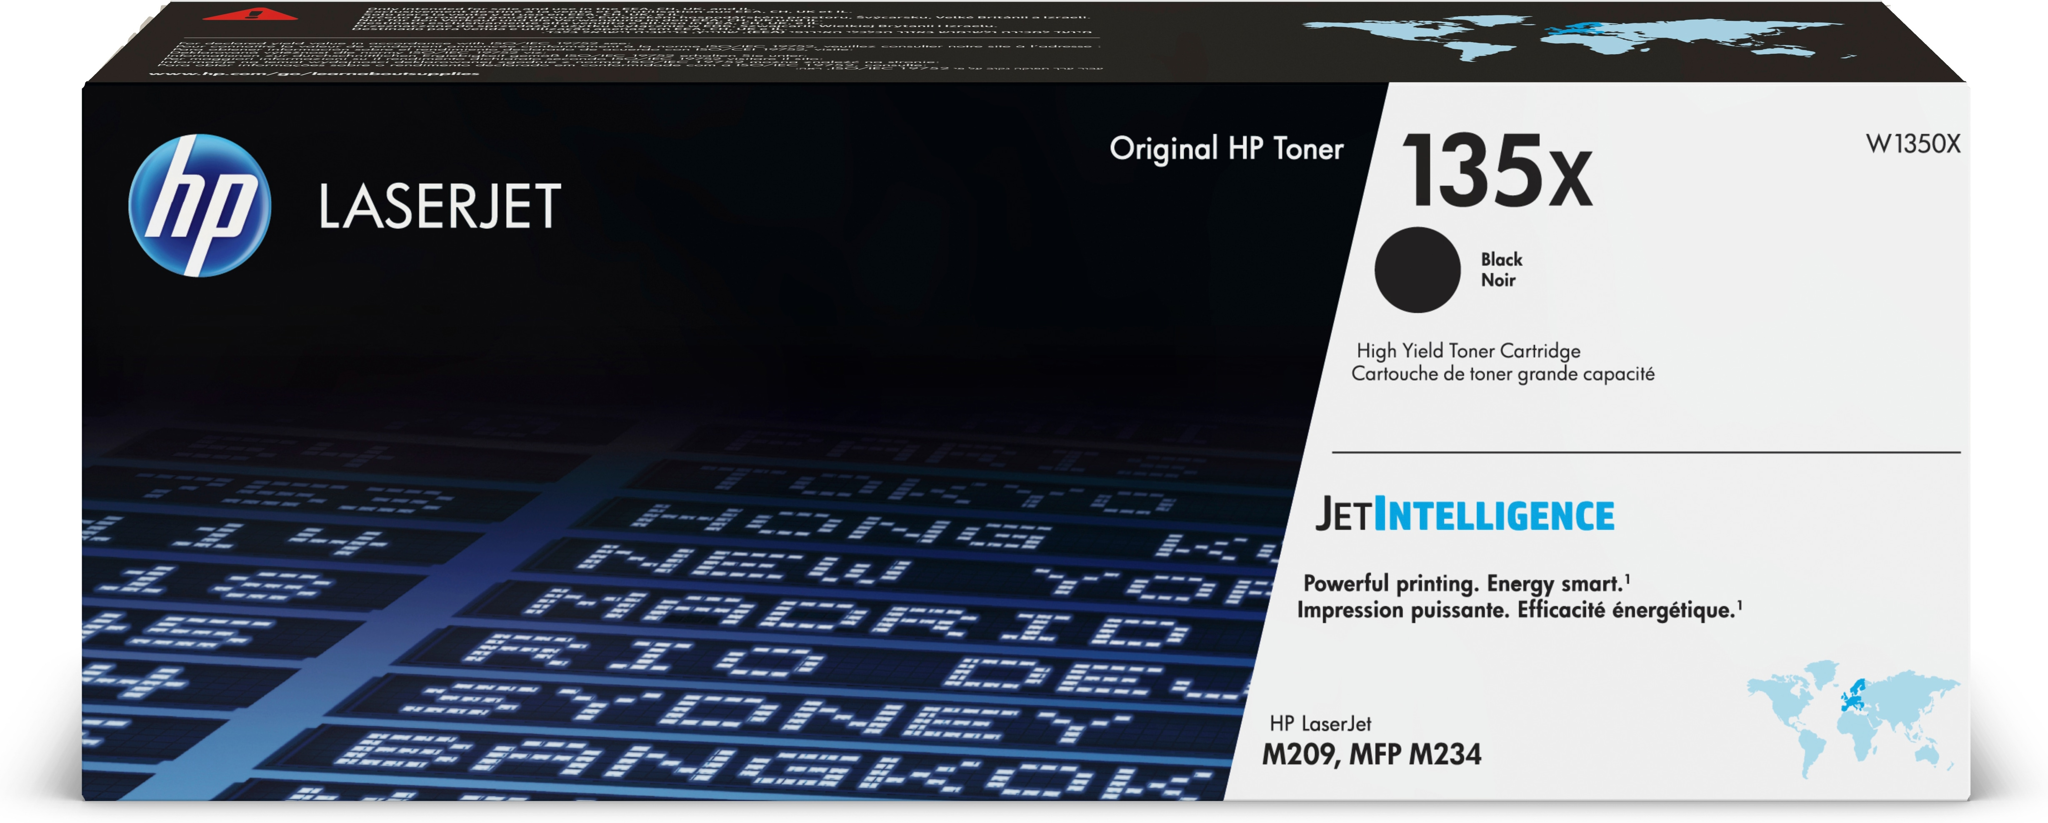 Bild von HP LaserJet 135X Schwarz Original Tonerkartusche mit hoher Reichweite - 2400 Seiten - Schwarz - 1 Stück(e)